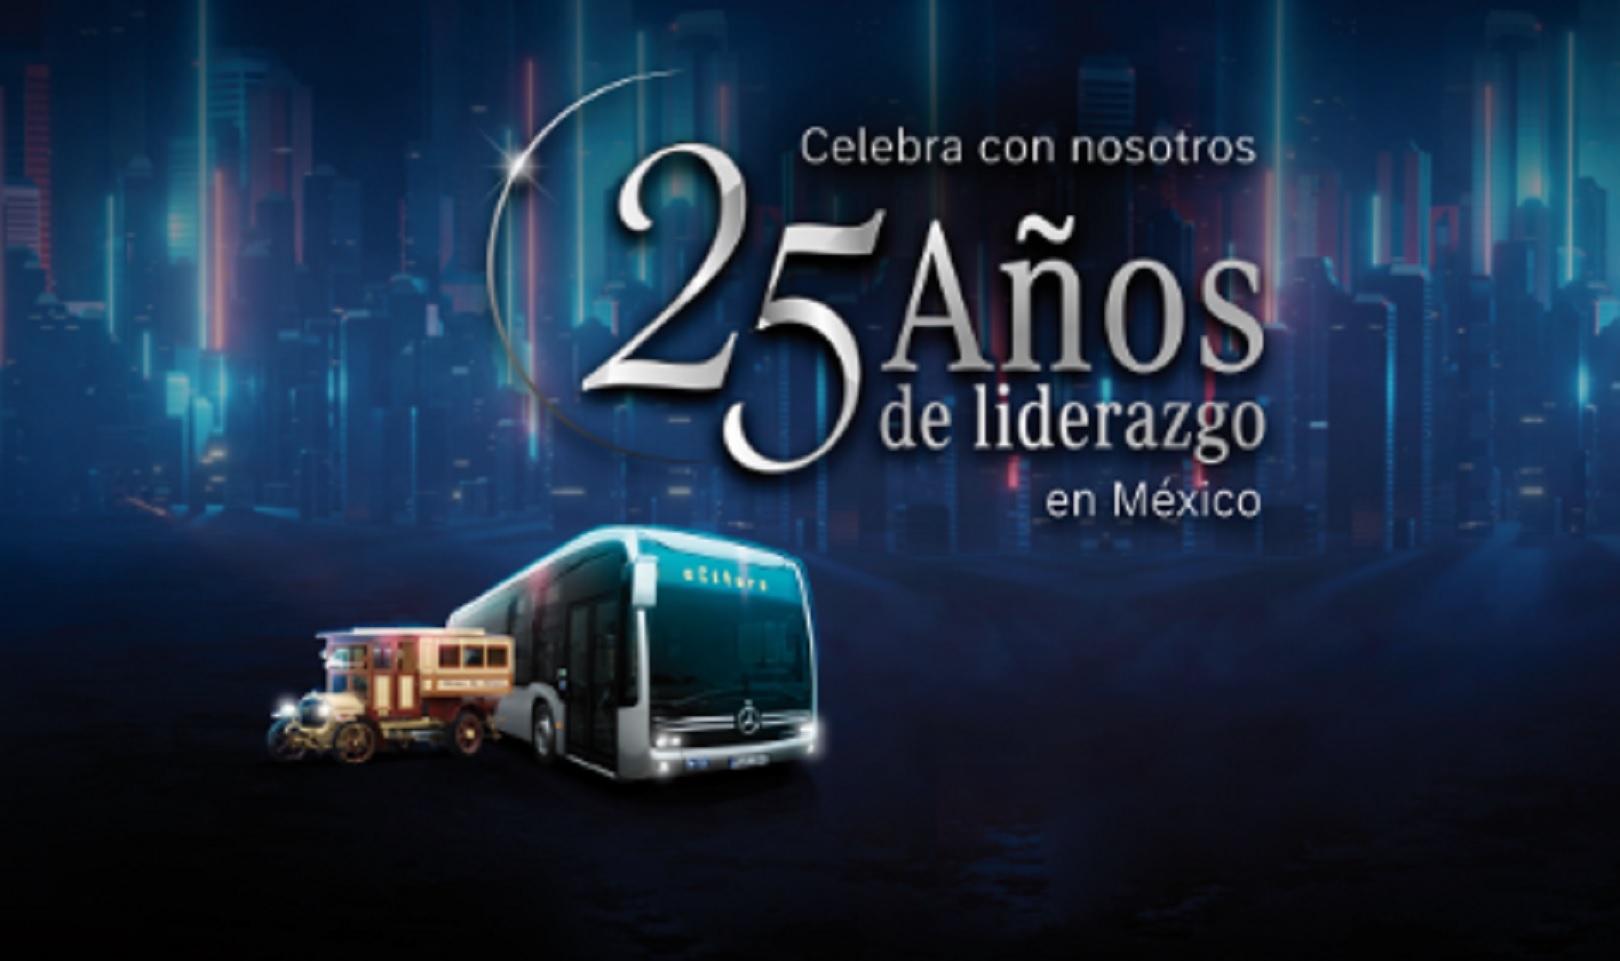 Mercedes-Benz Autobuses 25 Años